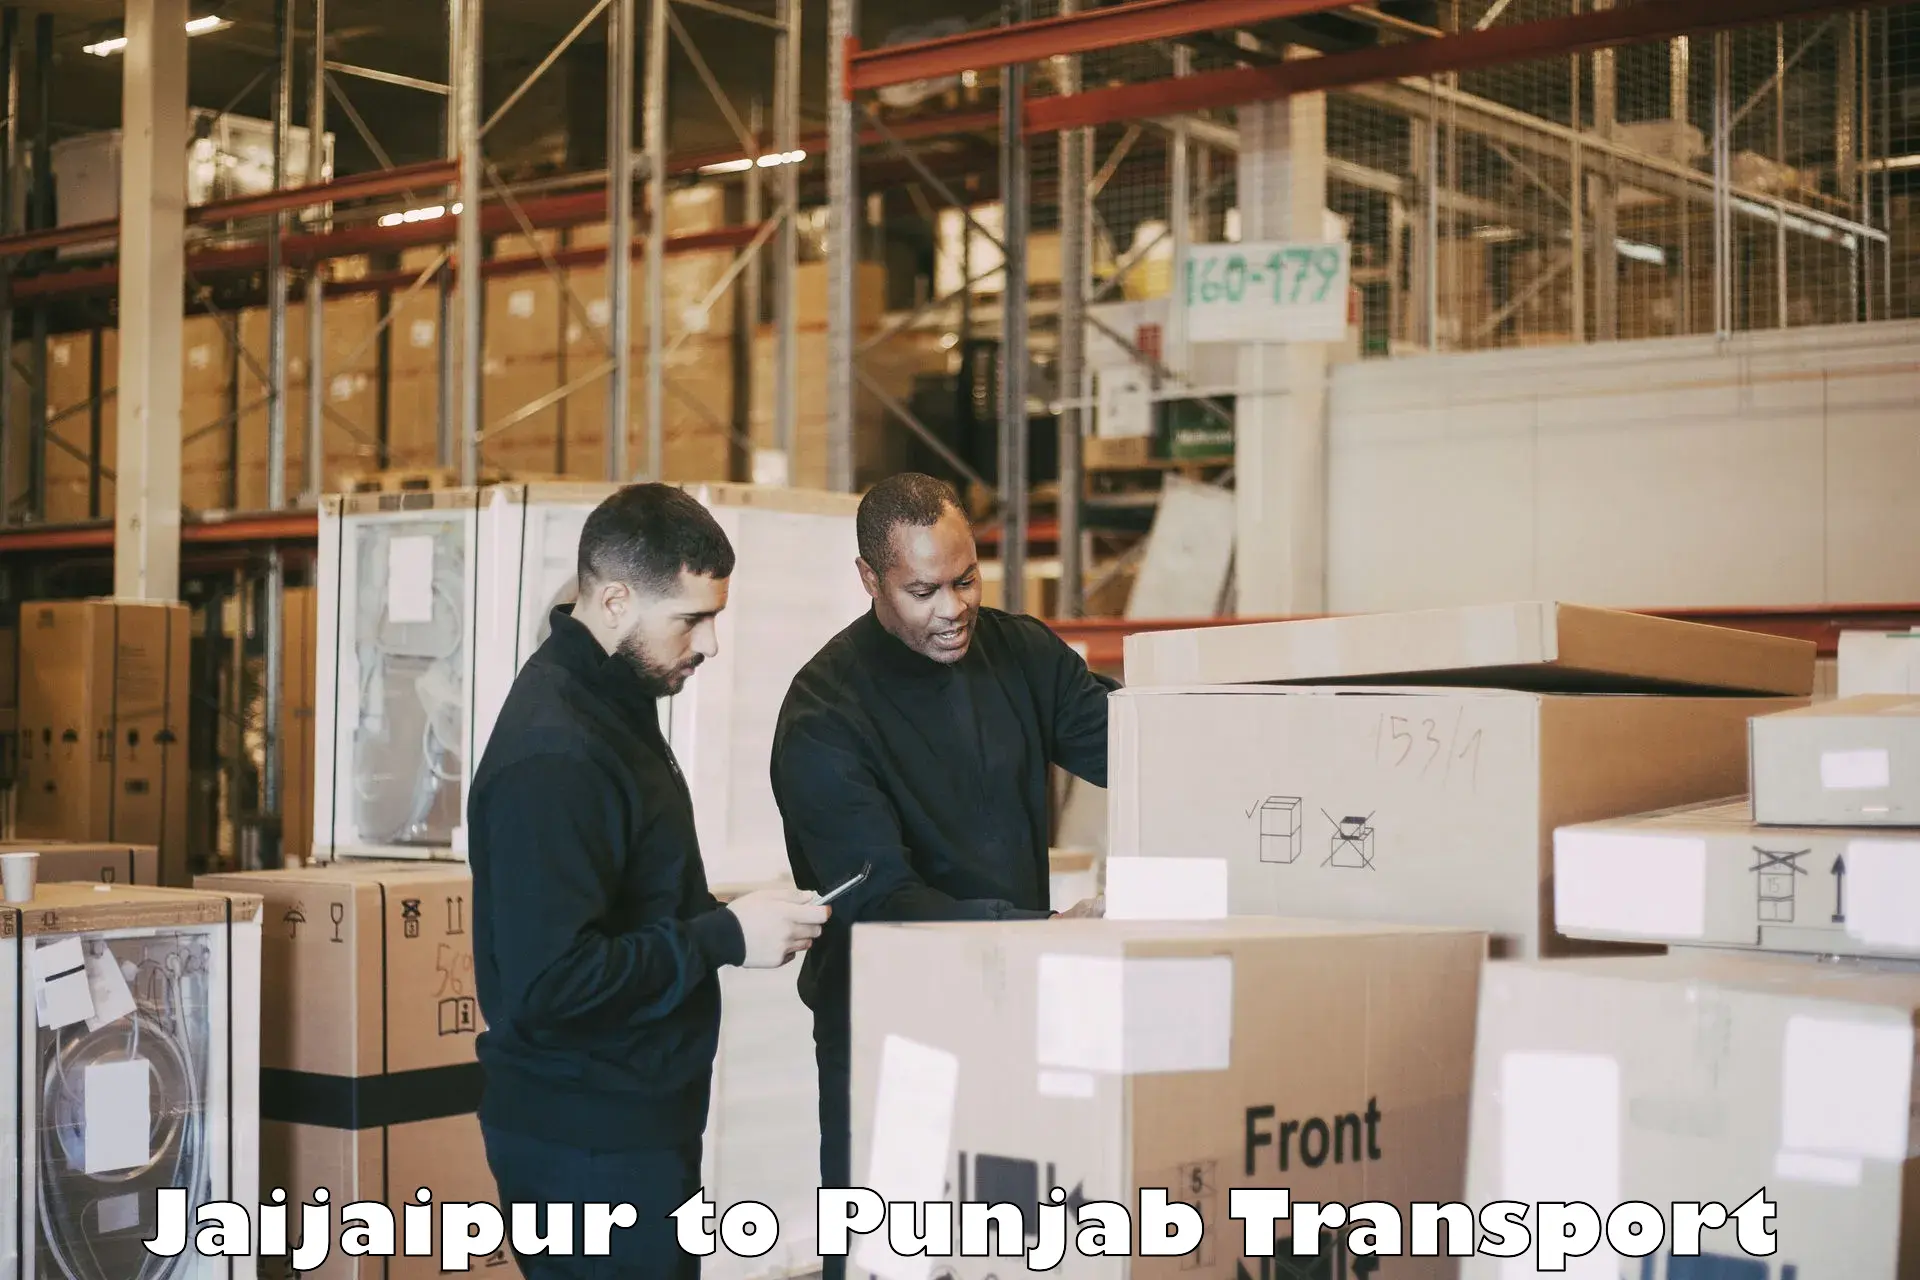 International cargo transportation services Jaijaipur to Goindwal Sahib